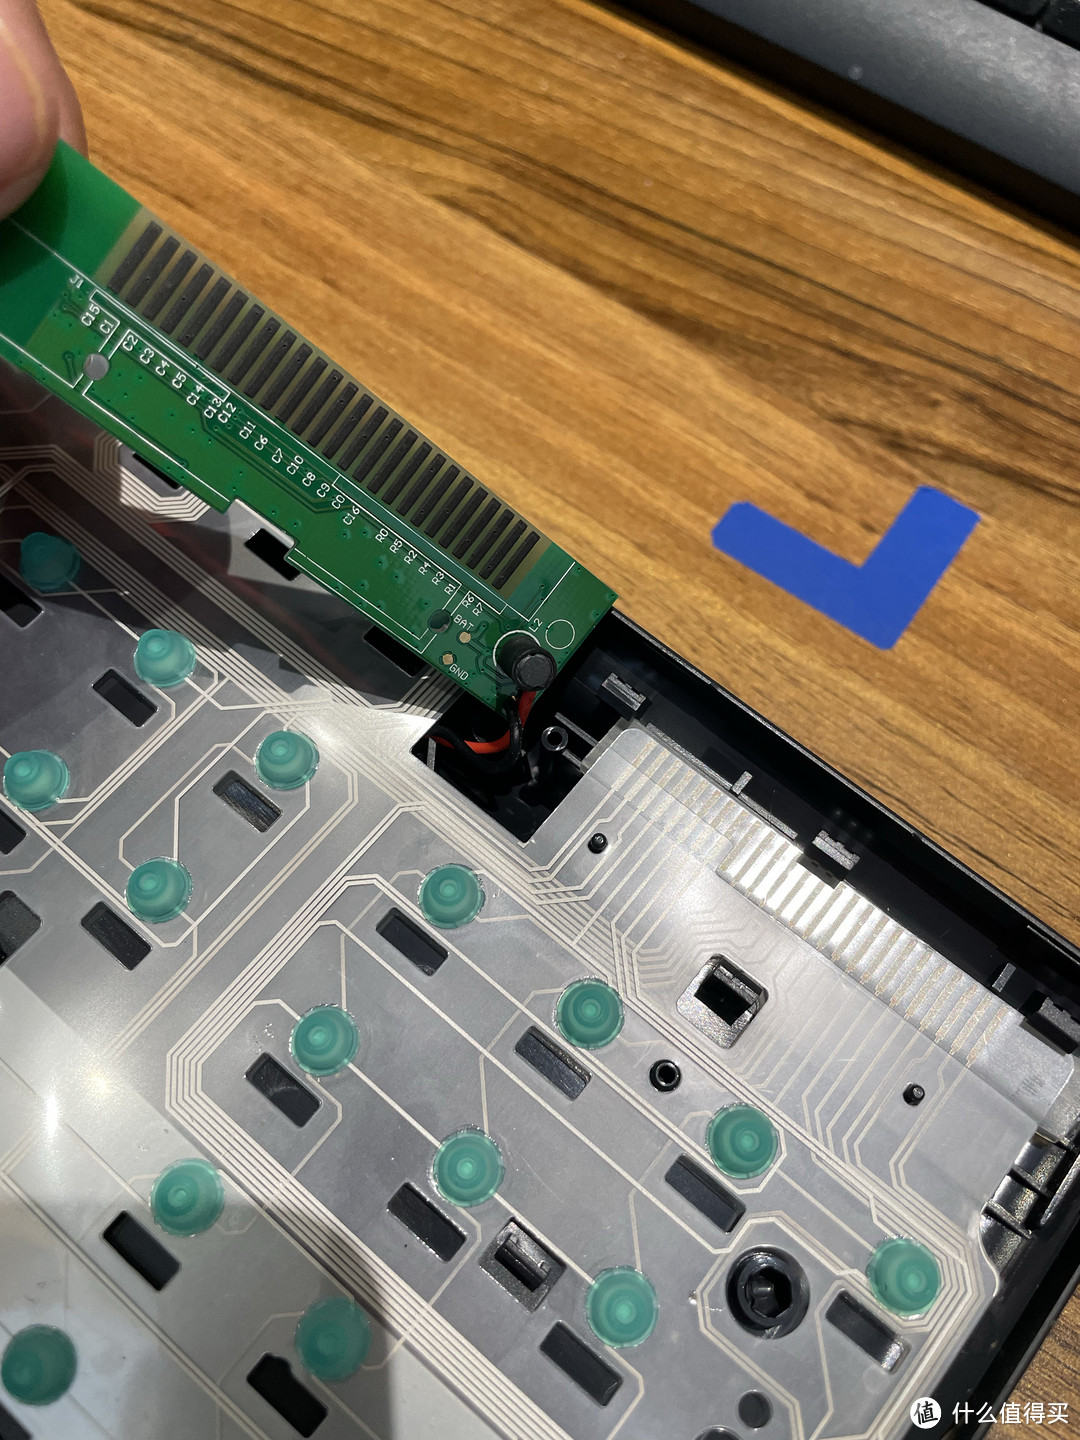 键盘薄膜线路板修复图片